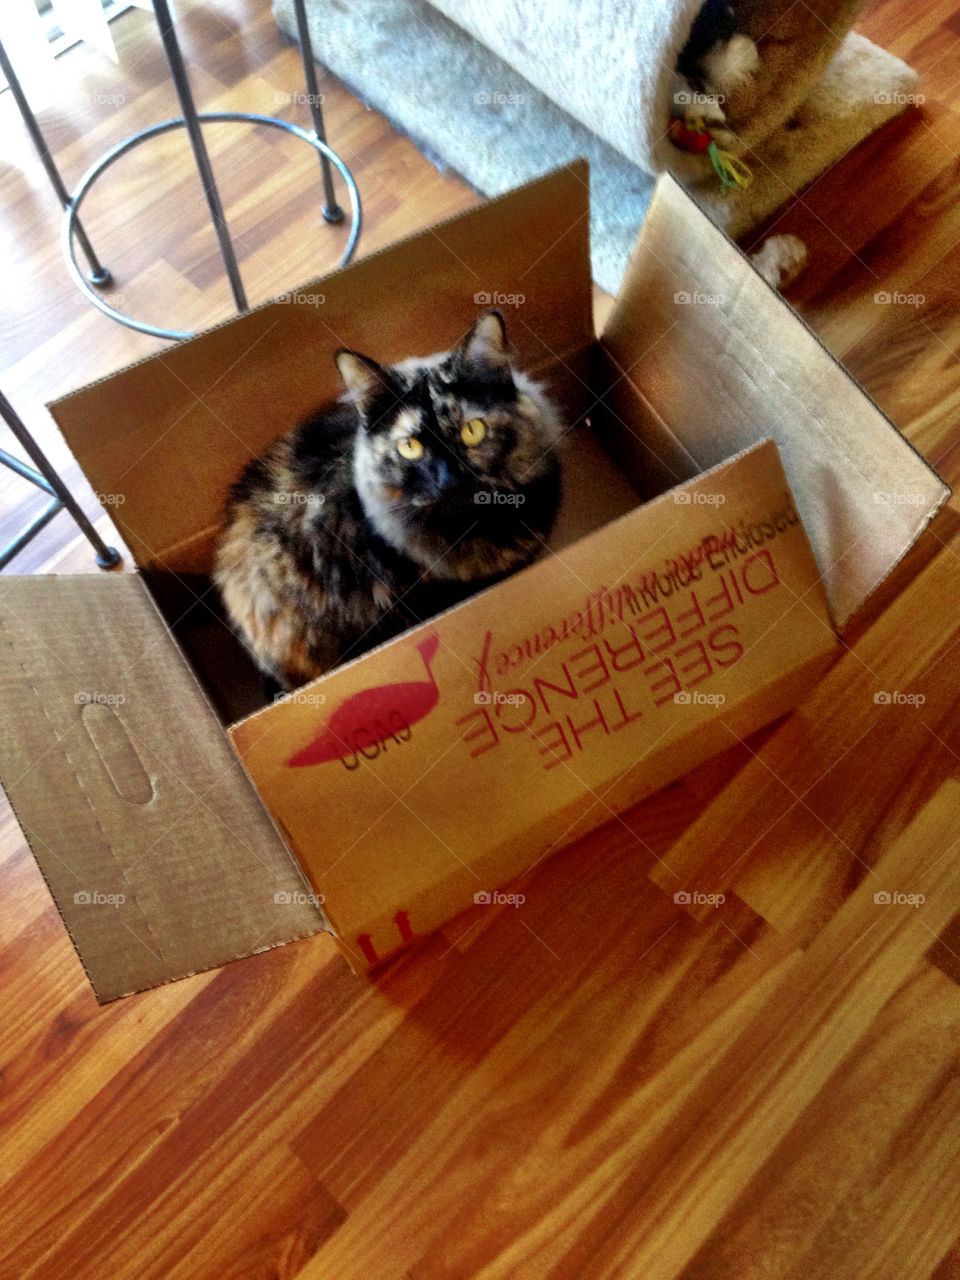 Sweetpea kitty in a box